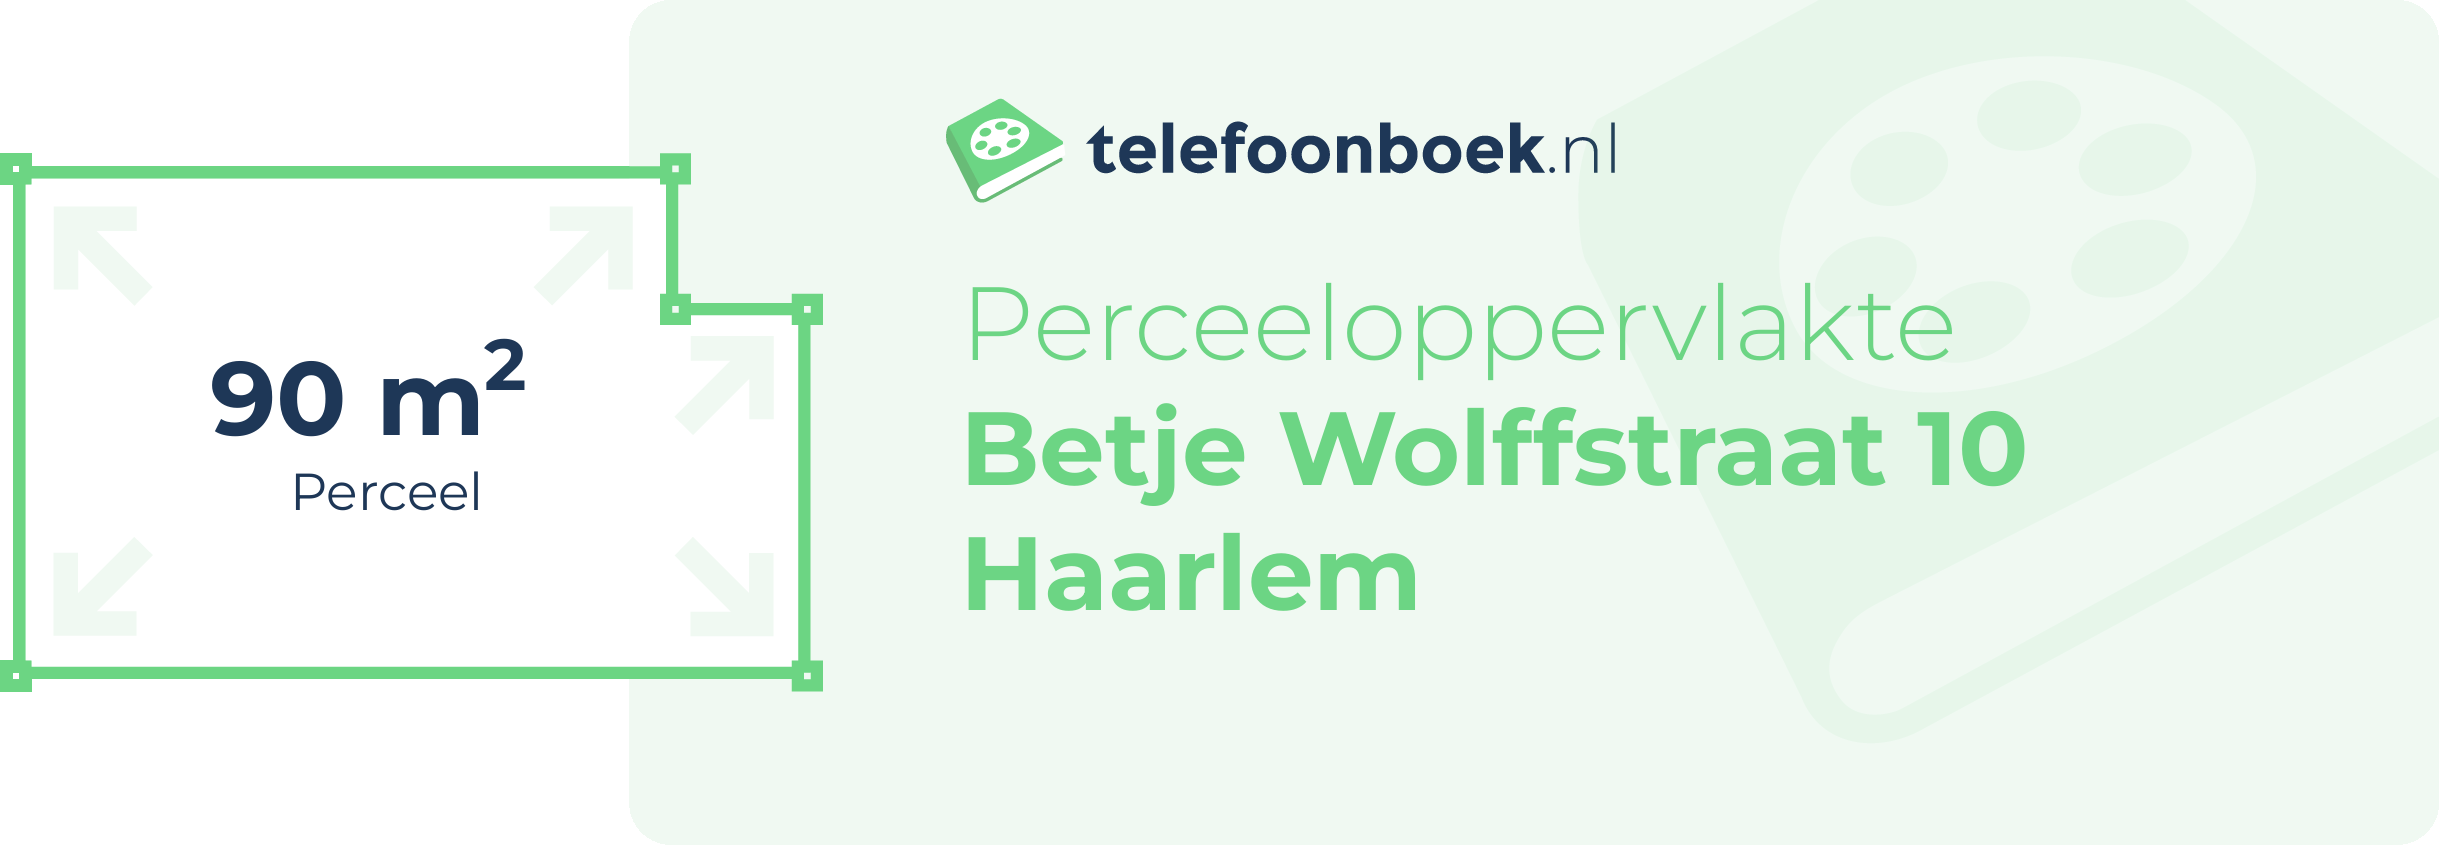 Perceeloppervlakte Betje Wolffstraat 10 Haarlem